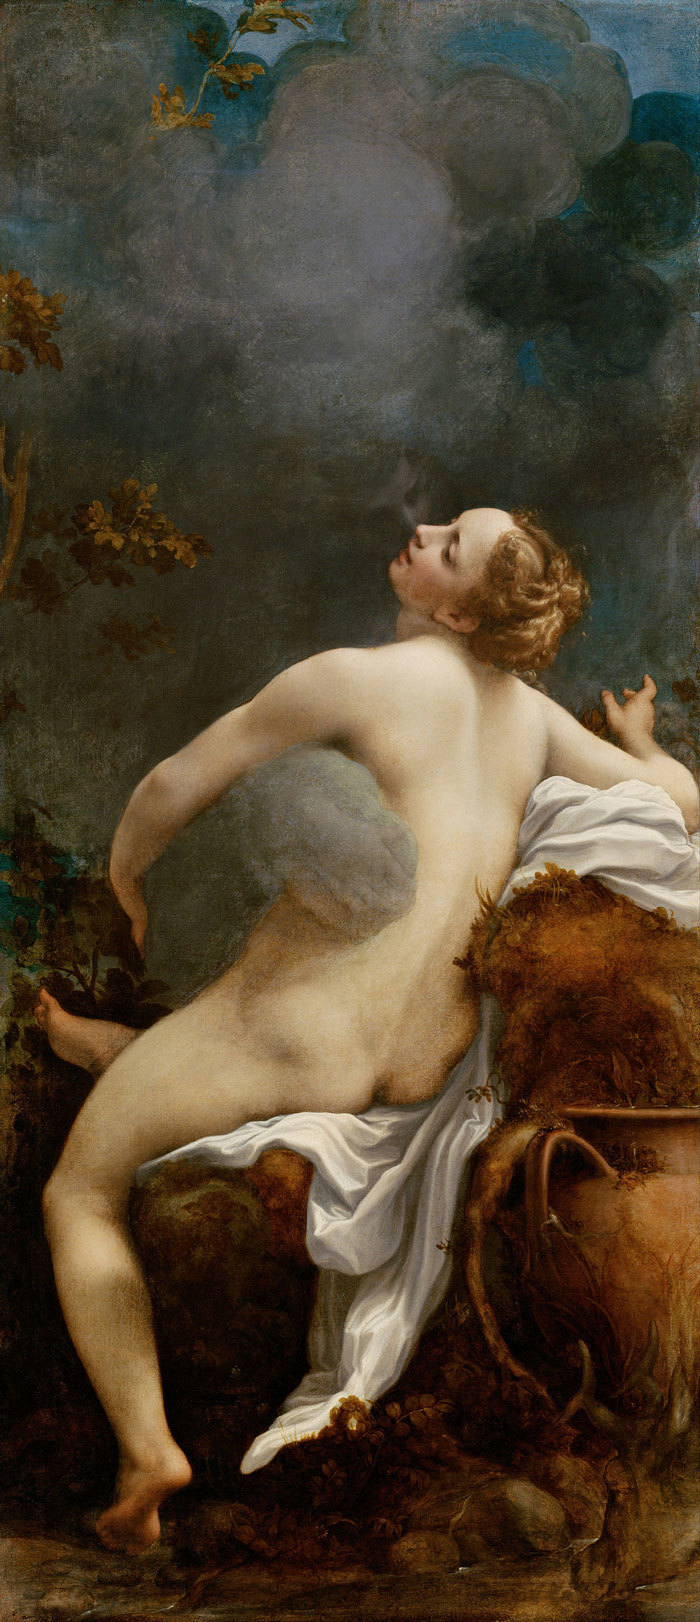 'Jupiter và Io': Tình yêu đam mê giữa thần và người